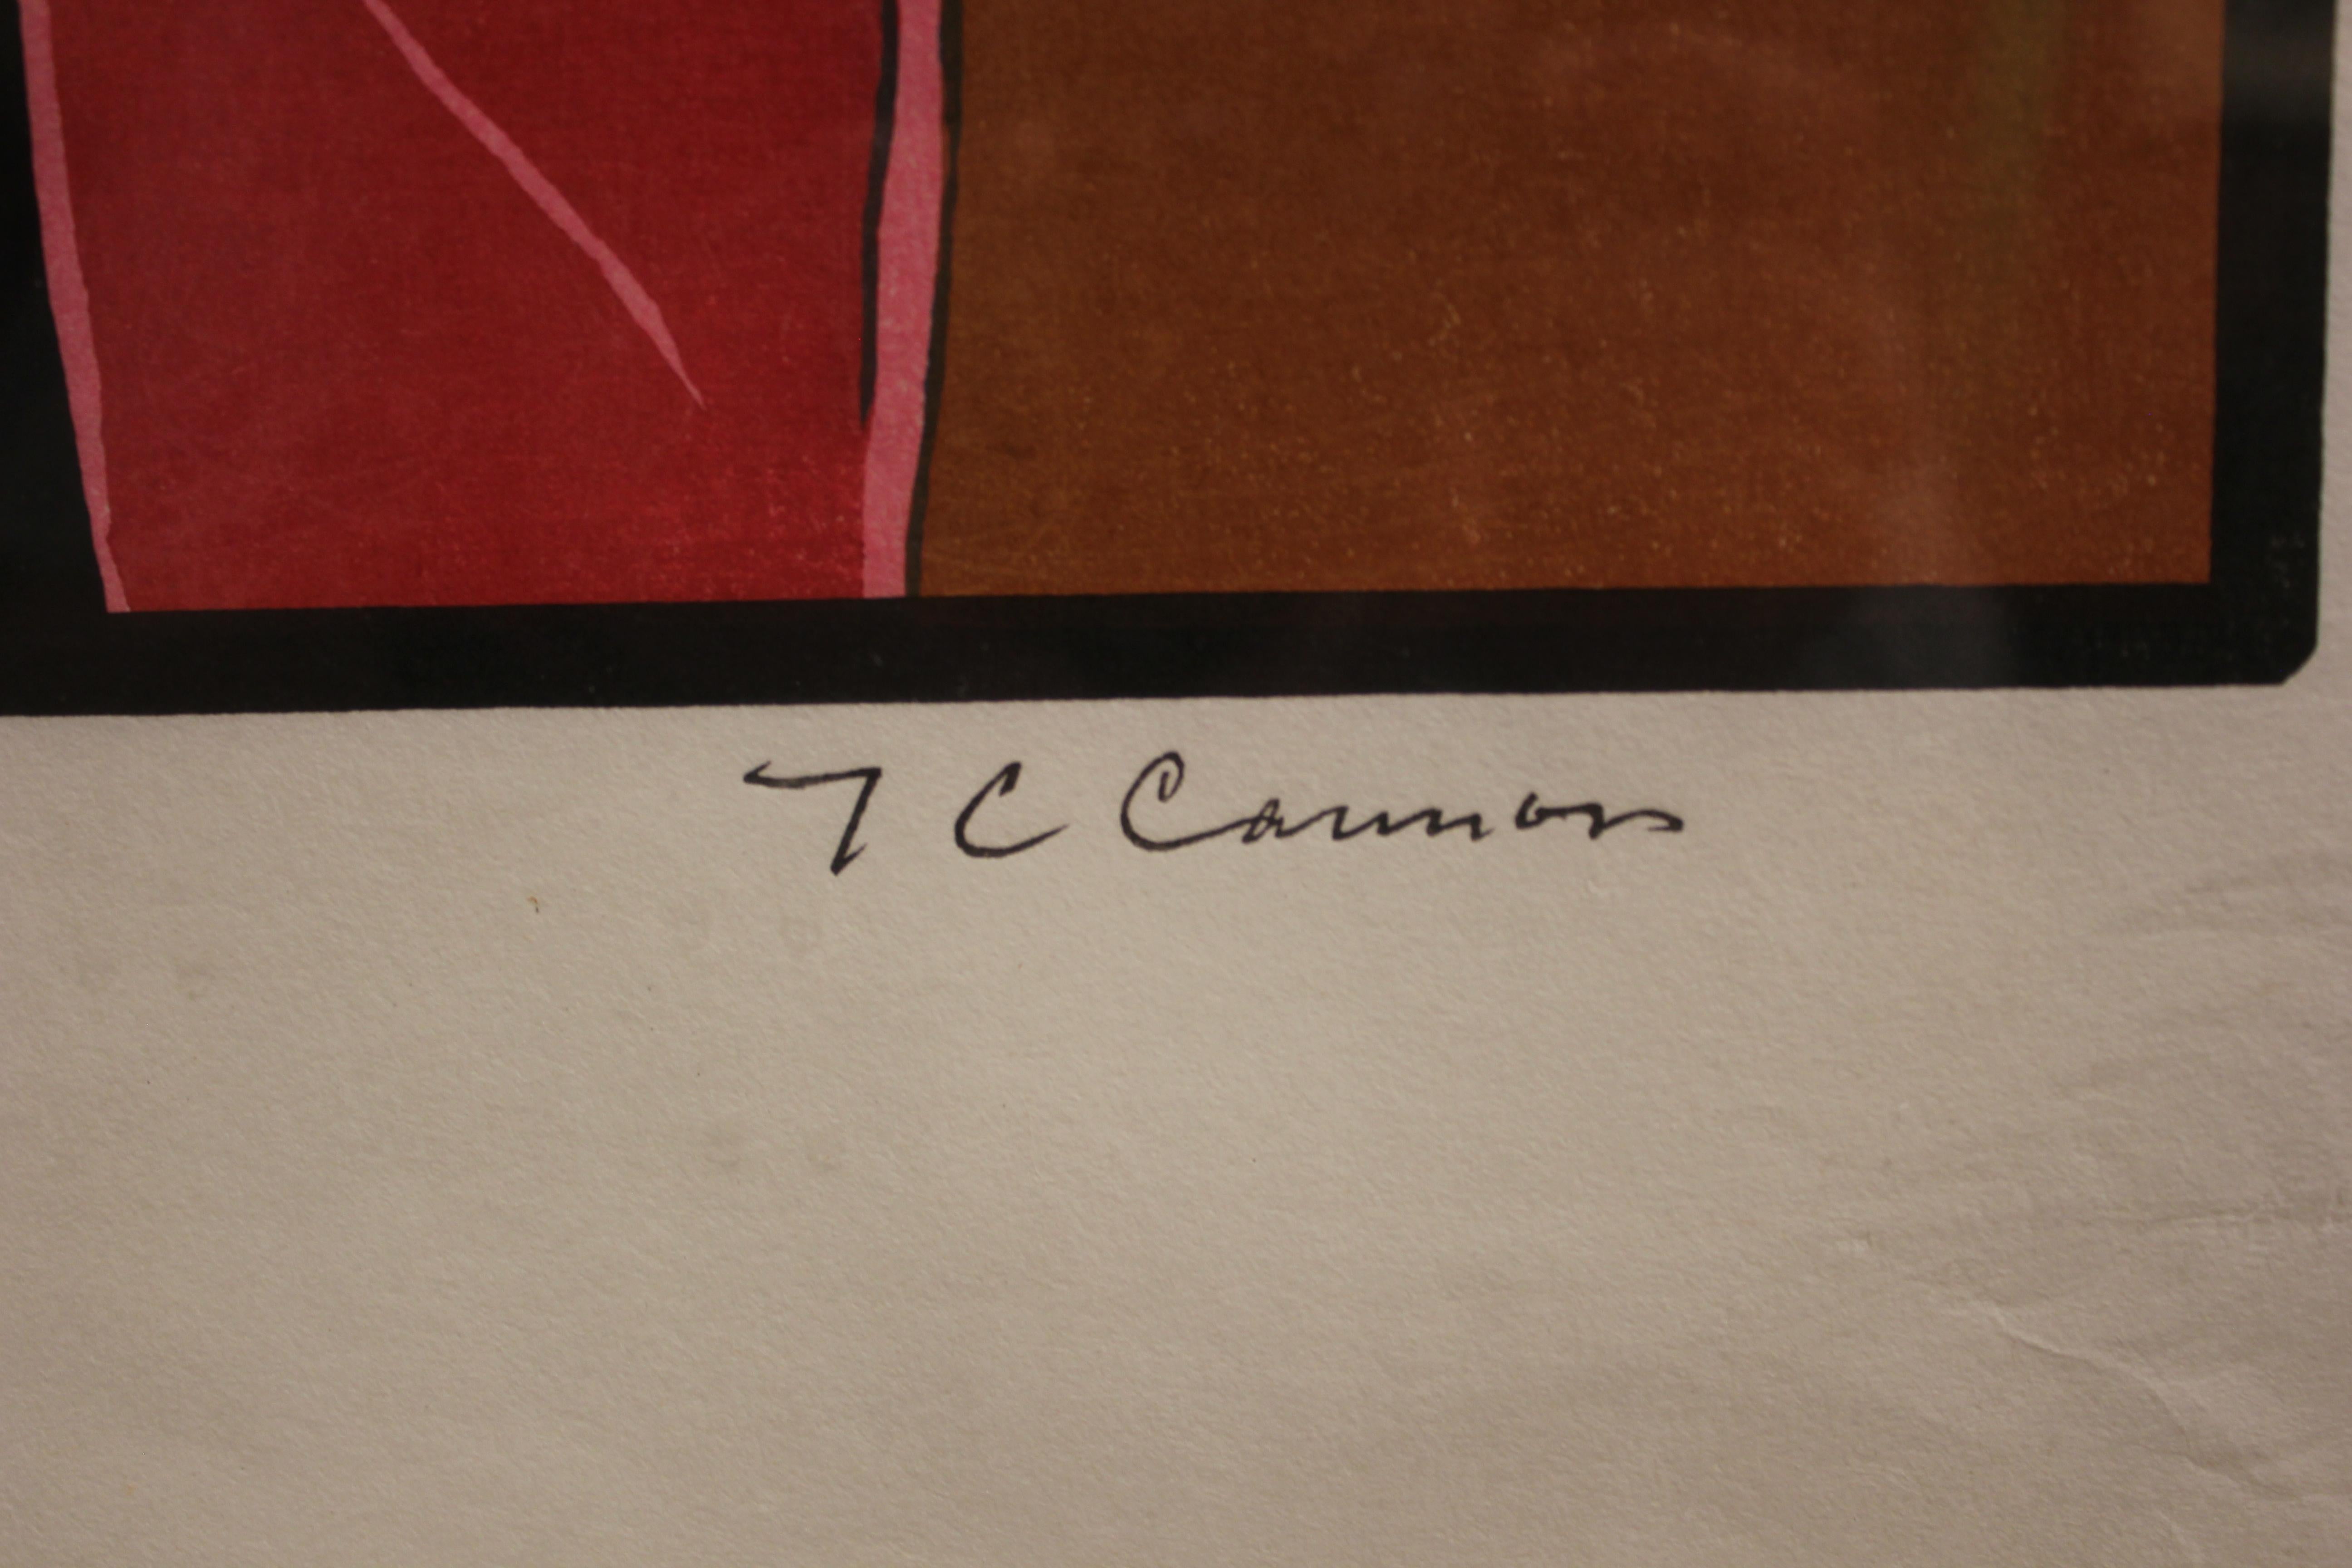 t.c. cannon prints